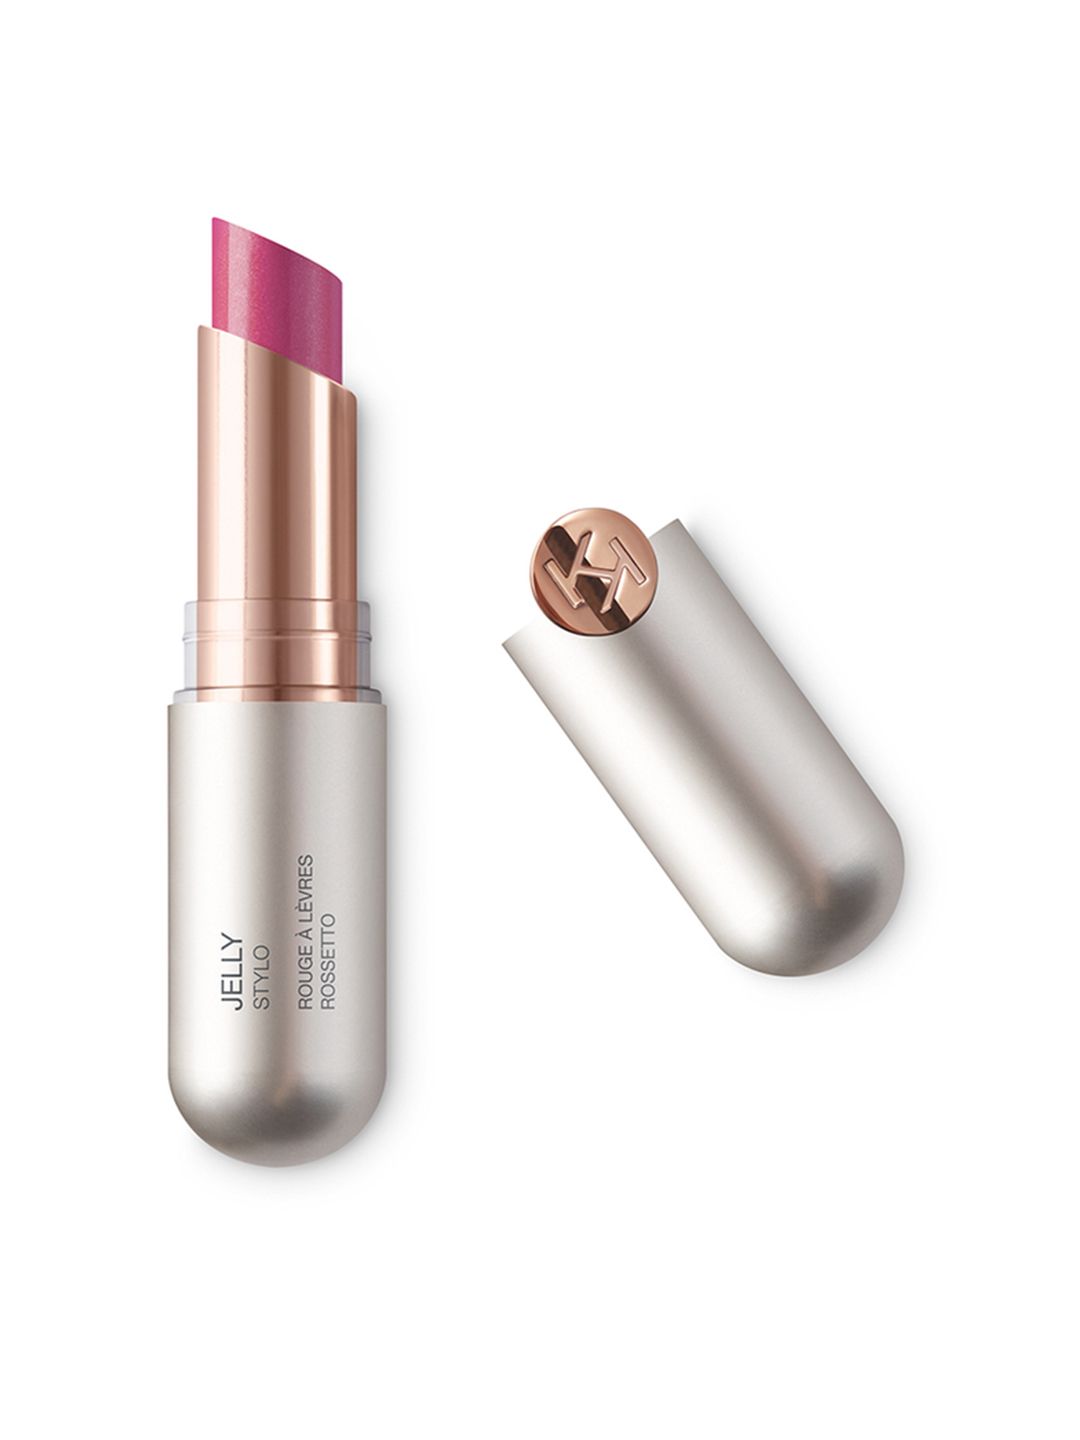 KIKO MILANO Jelly Stylo Lipstick - 512 Magenta Price in India